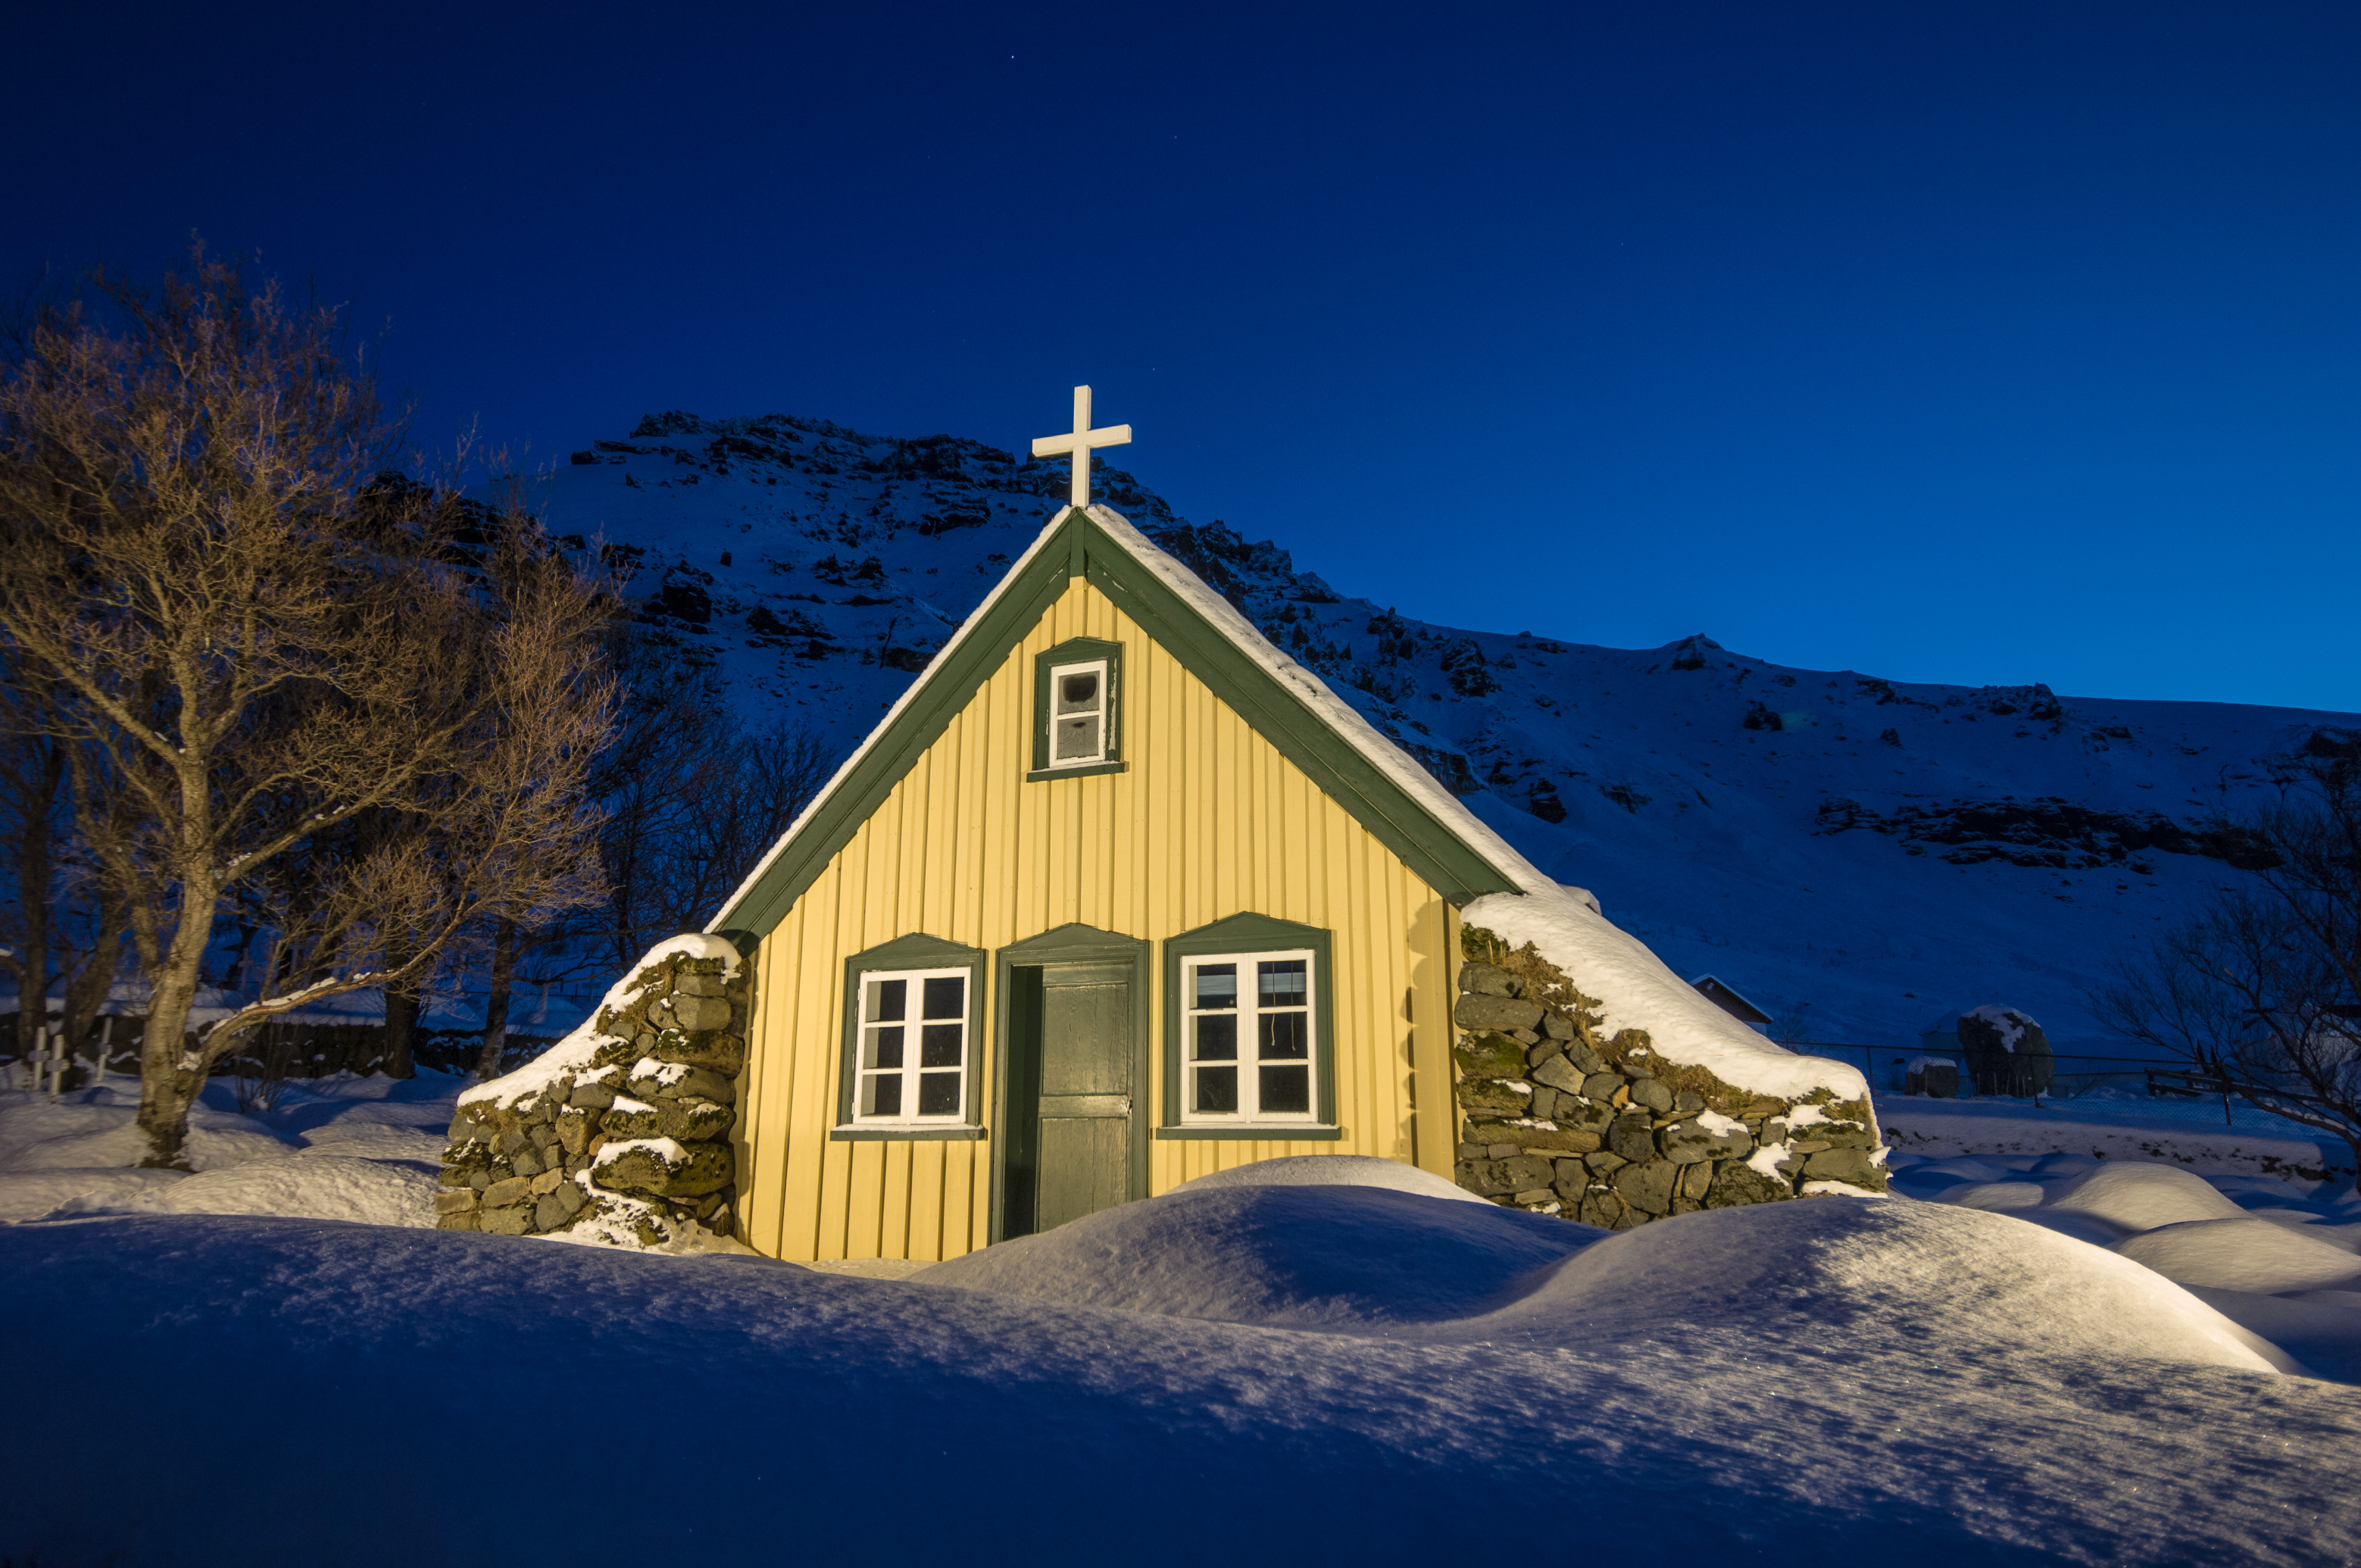 L'Islande en hiver : découvrez aussi notre "Carnet d'Islande" [édition] et le reportage paru dans Grands Reportages magazine #328 / Photos : Aurélien BRUSINI